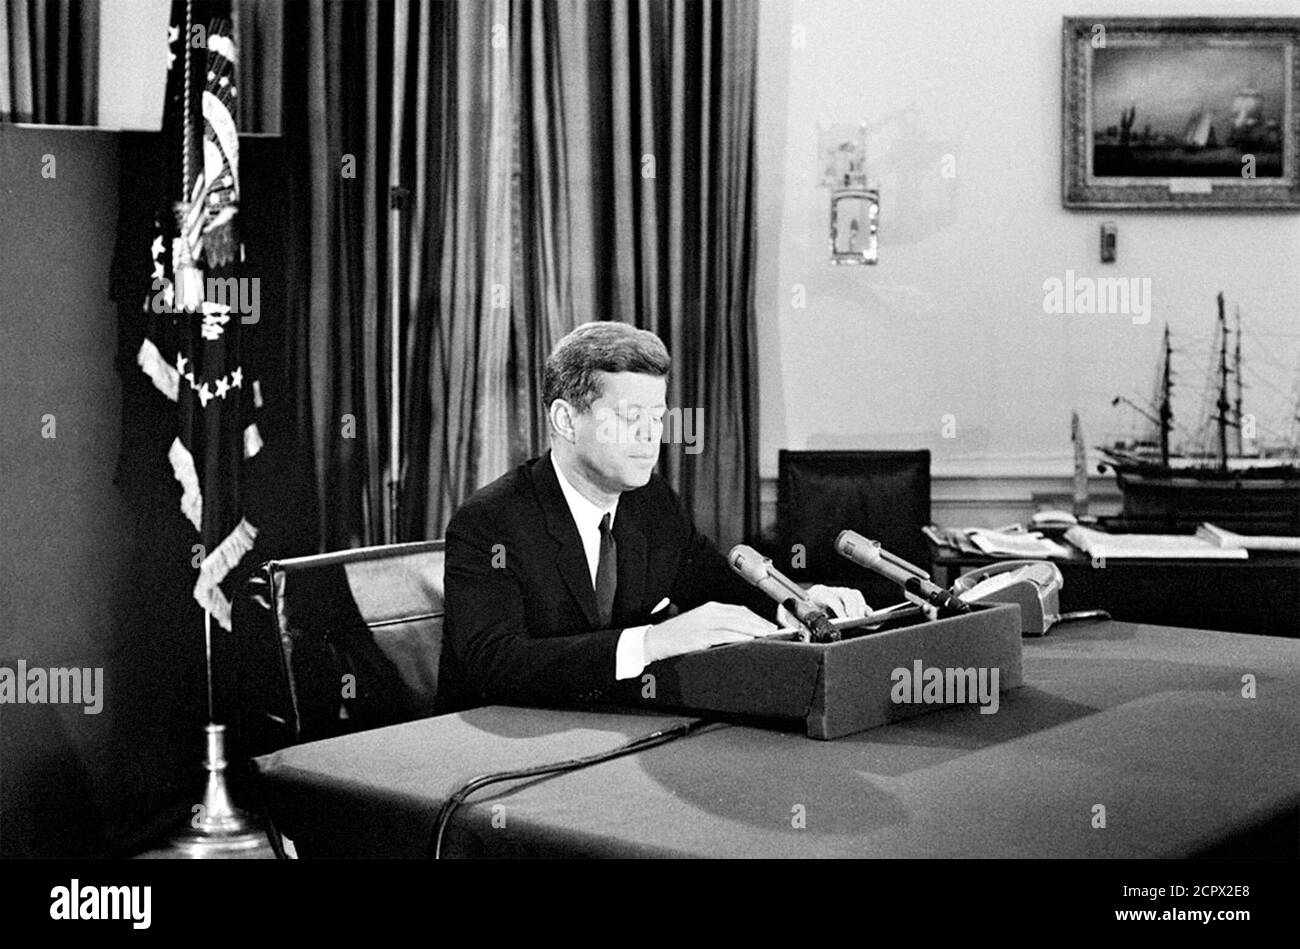 Crisi missilistica cubana. Il presidente John F Kennedy si rivolge alla nazione dell'Ufficio ovale il 22 ottobre 1962 per quanto riguarda la minaccia dei missili sovietici a Cuba. Foto Stock